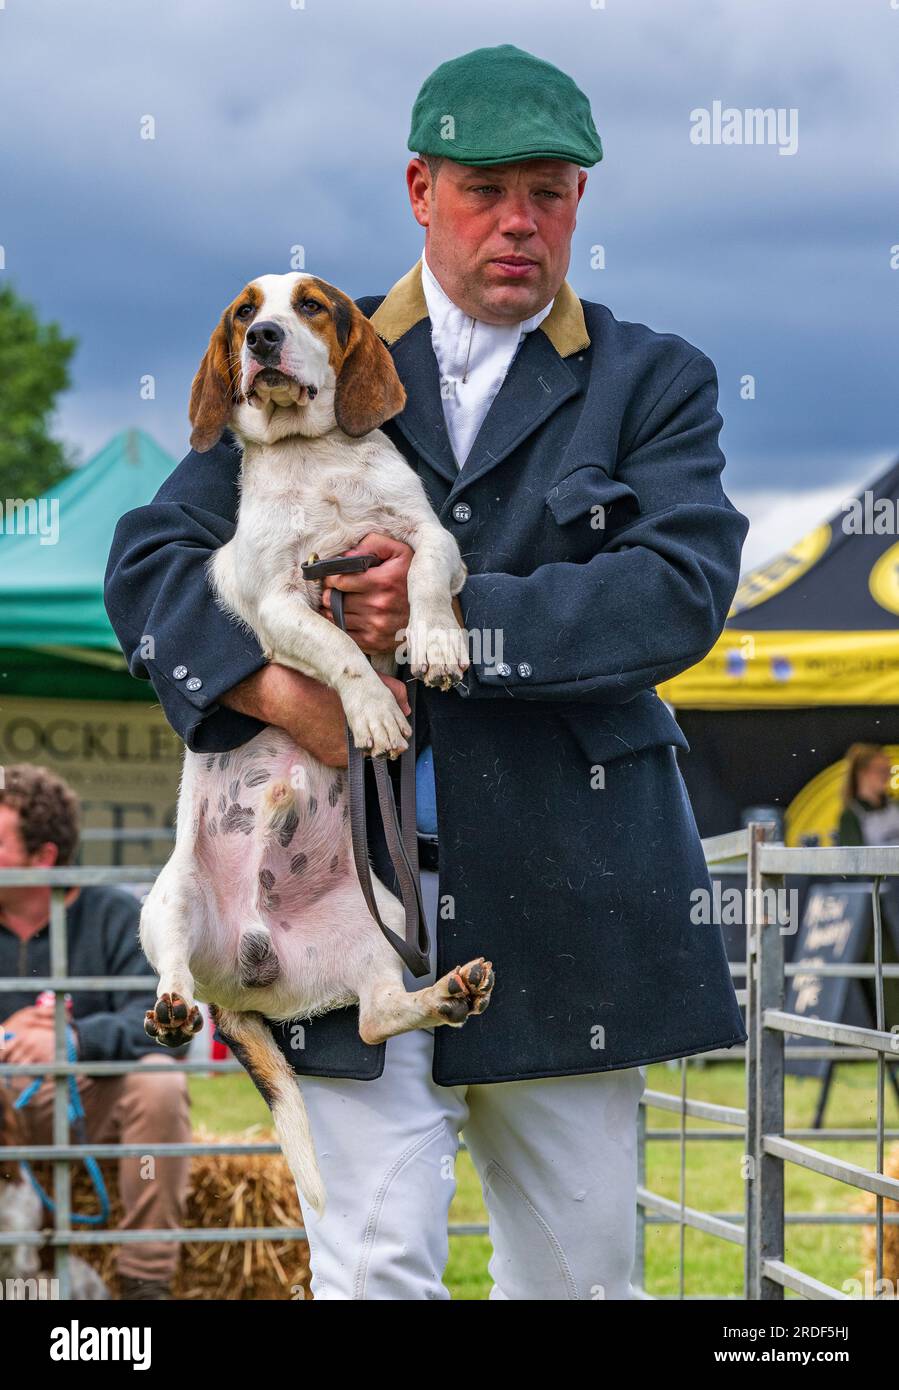 The Showground, Peterborough, Großbritannien – das Festival of Hunting feiert neben Fox Hounds auch Beagles, Harriers und Basset Hounds und ist damit eine der größten aktiven Dufthunde-Shows der Welt Stockfoto